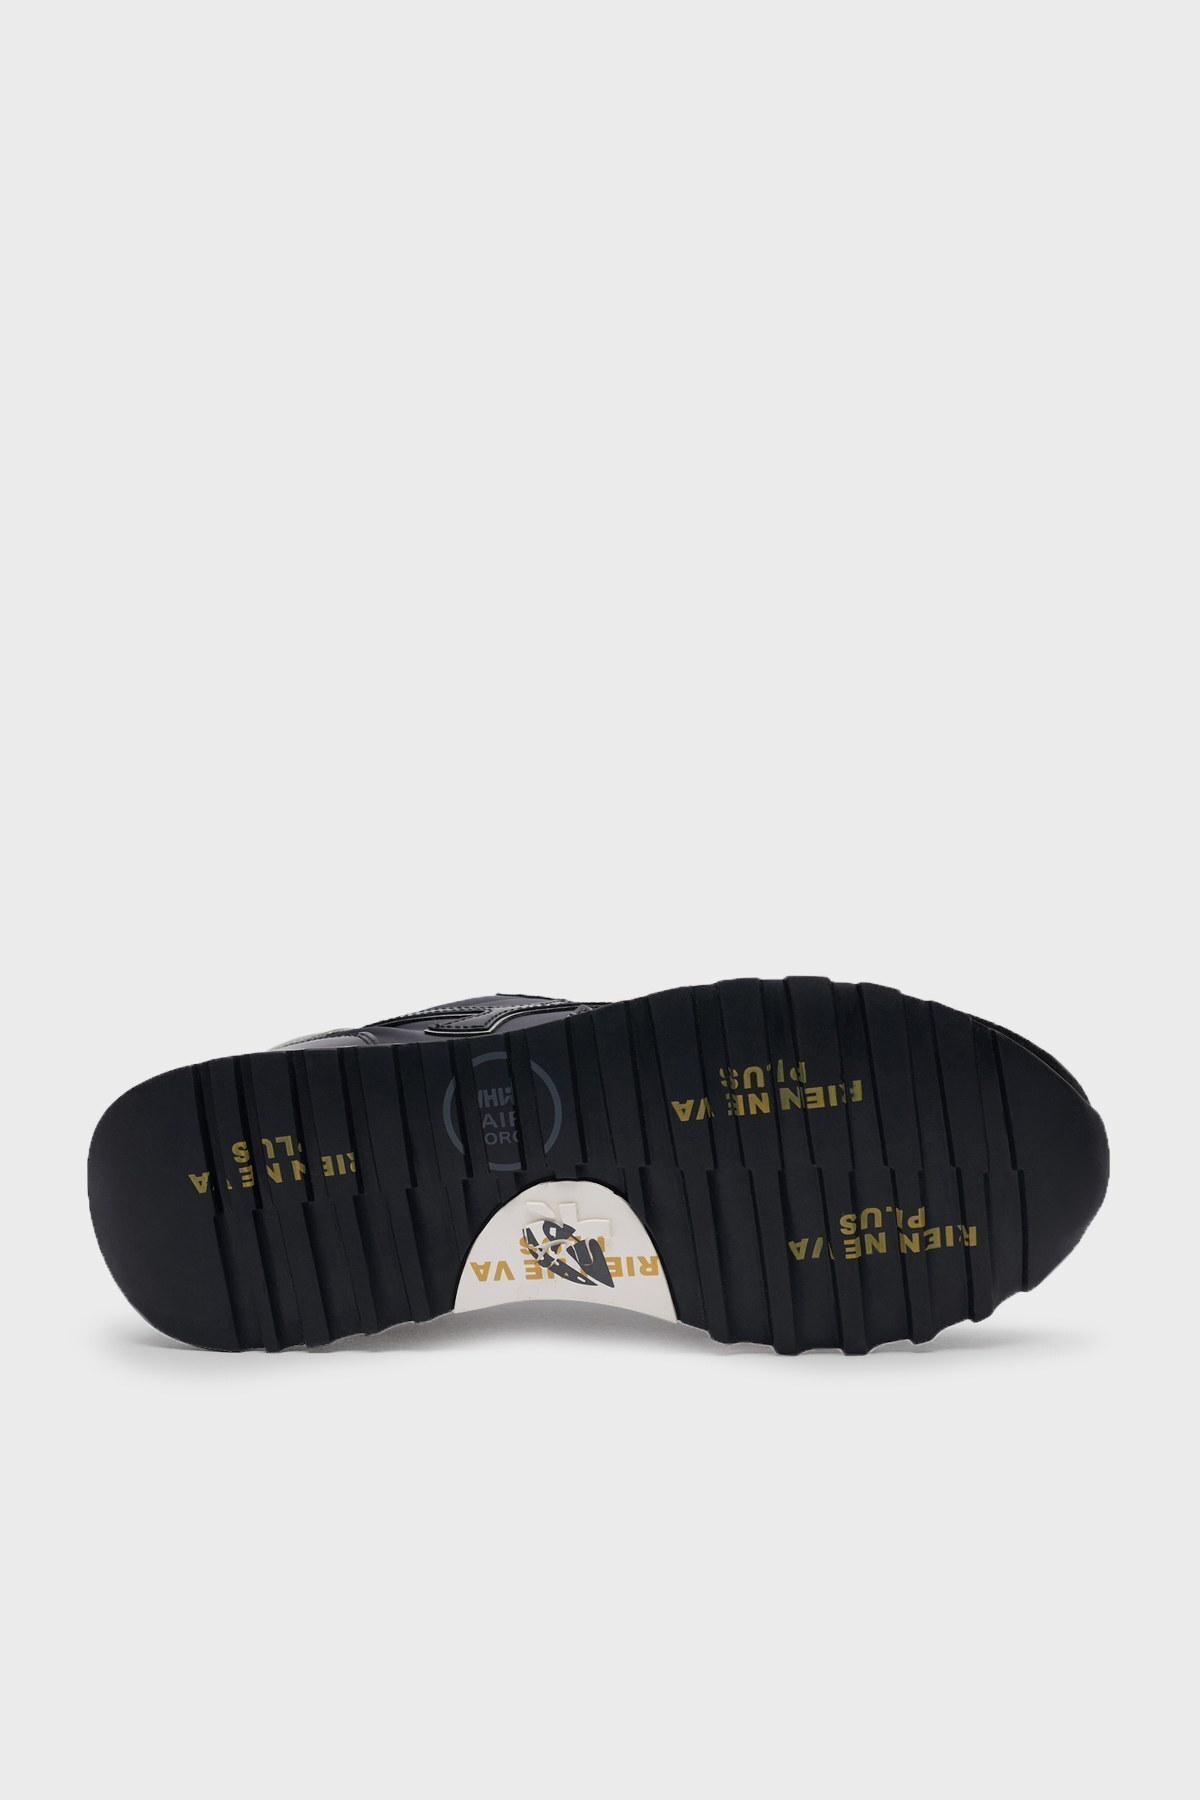 Premiata Baskılı Sneaker Erkek Ayakkabı MICK 5017 SİYAH